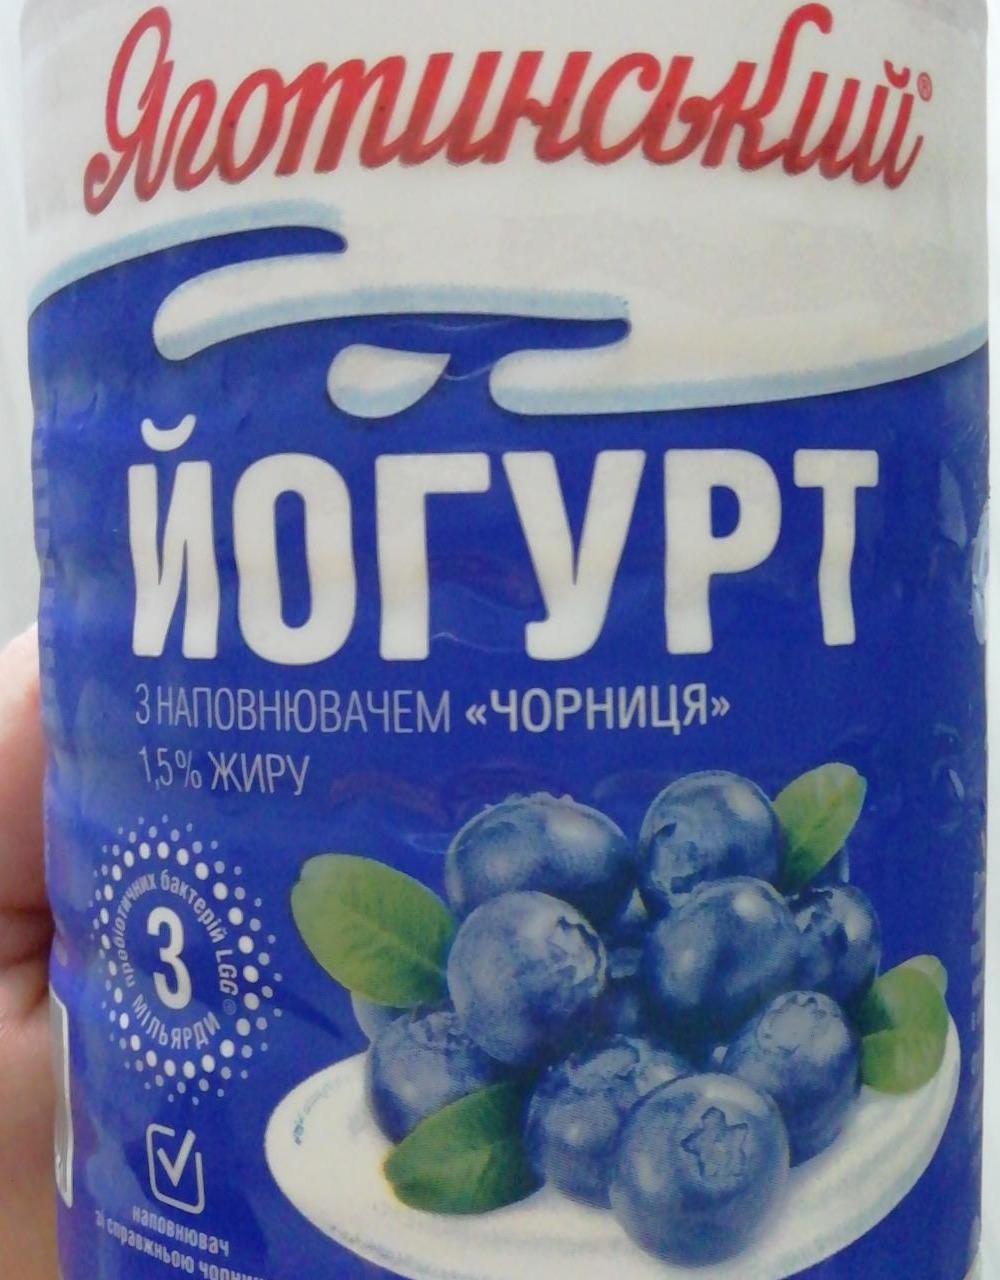 Фото - Йогурт питьевой 1.5% черника Яготинский